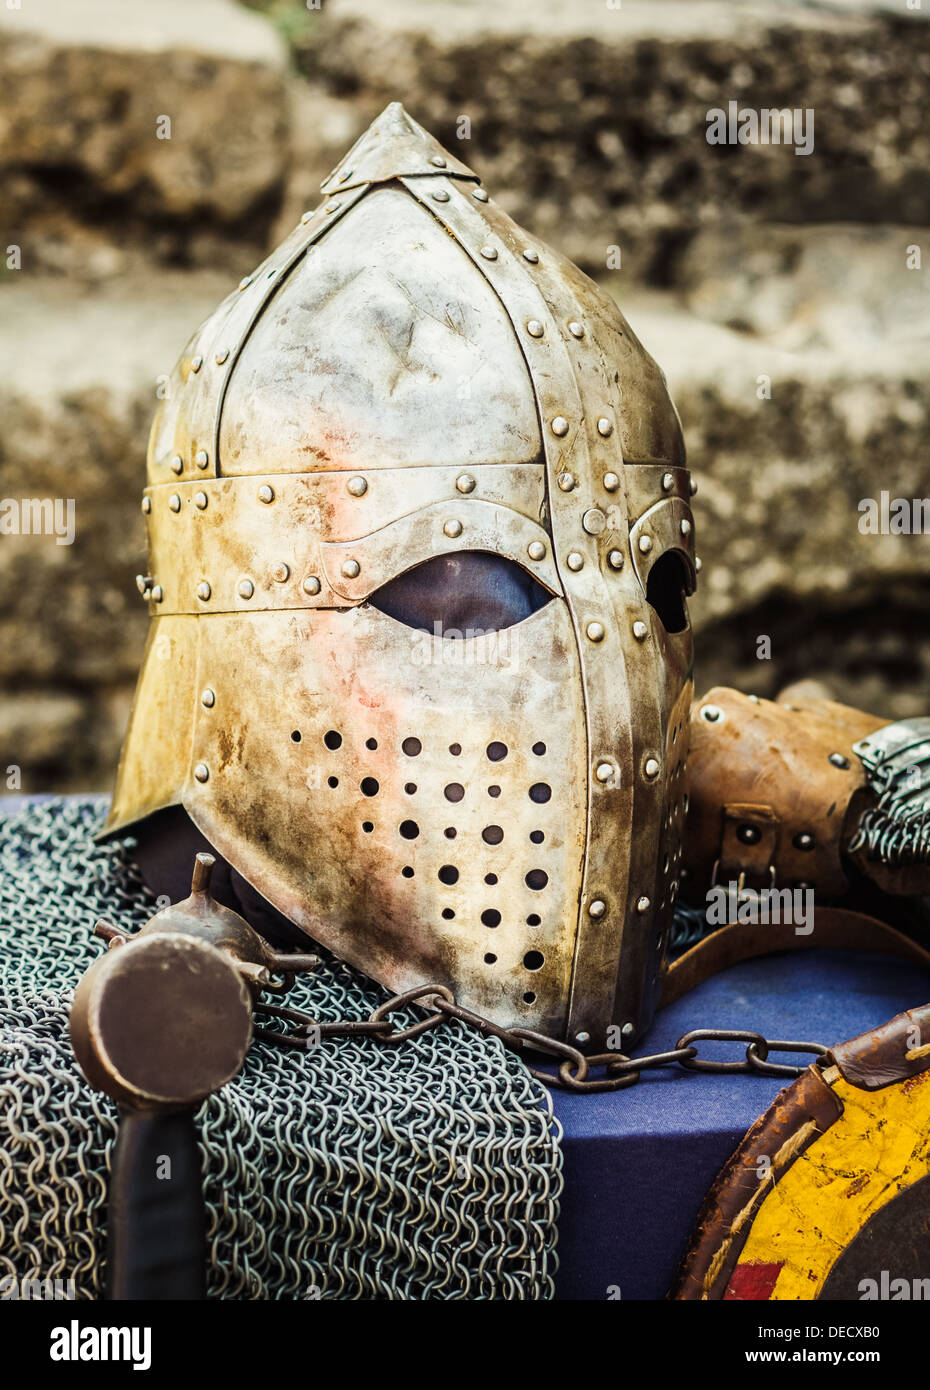 Casque de protection avec une visière sur chevalier médiéval. Casque Templier médiéval chevalier attendant Banque D'Images